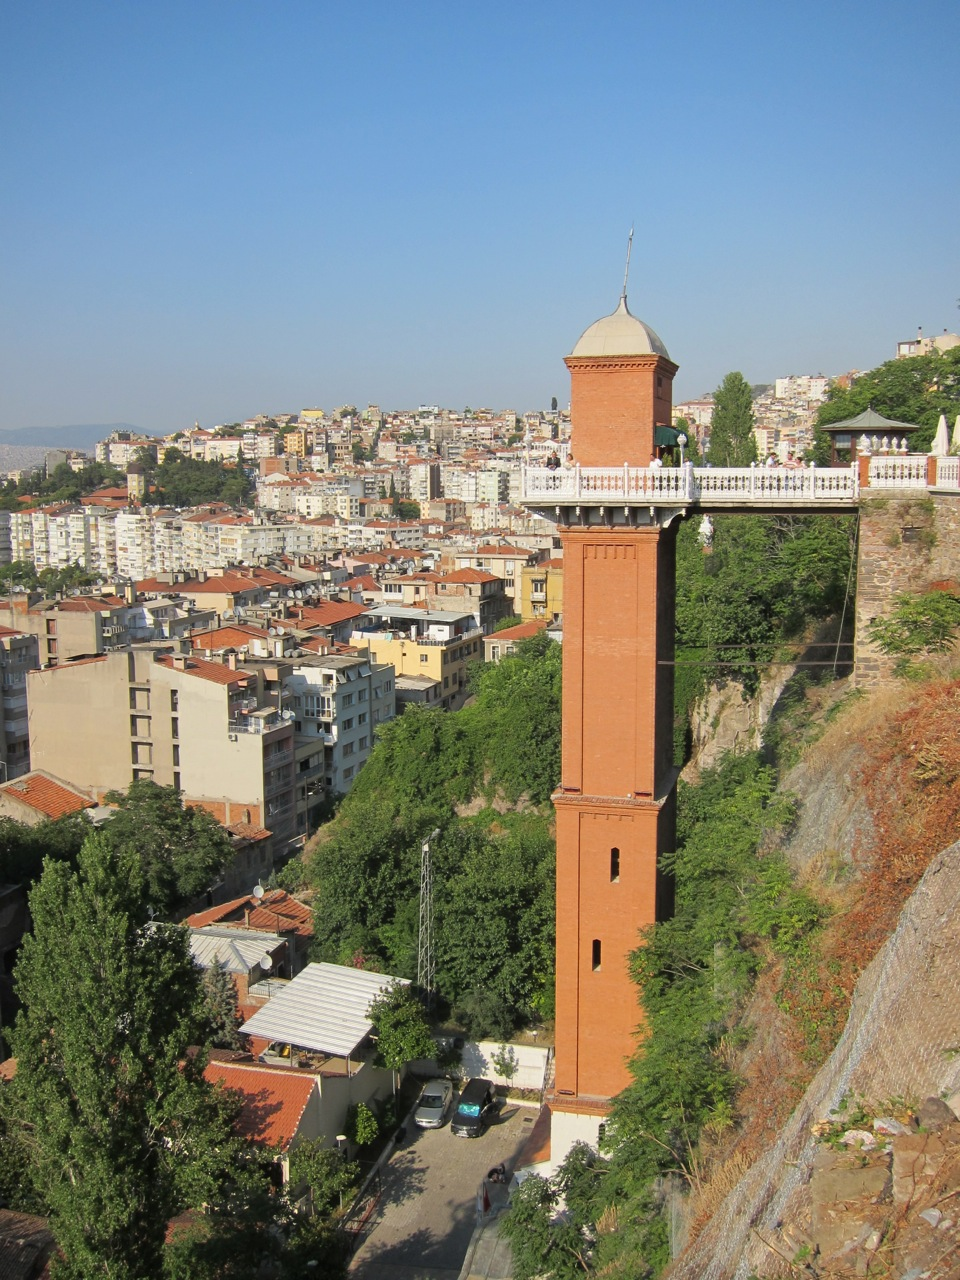 İzmir’in Musevi iş adamı Nesim Levi'nin, 1907 yılında yaptırdığı asansör, kolaylaştırdığı ulaşım şeklinin yanı sıra zarif kulesi ve estetik güzelliğiyle bugün bile İzmir’in çehresine farklı bir güzellik katıyor. 